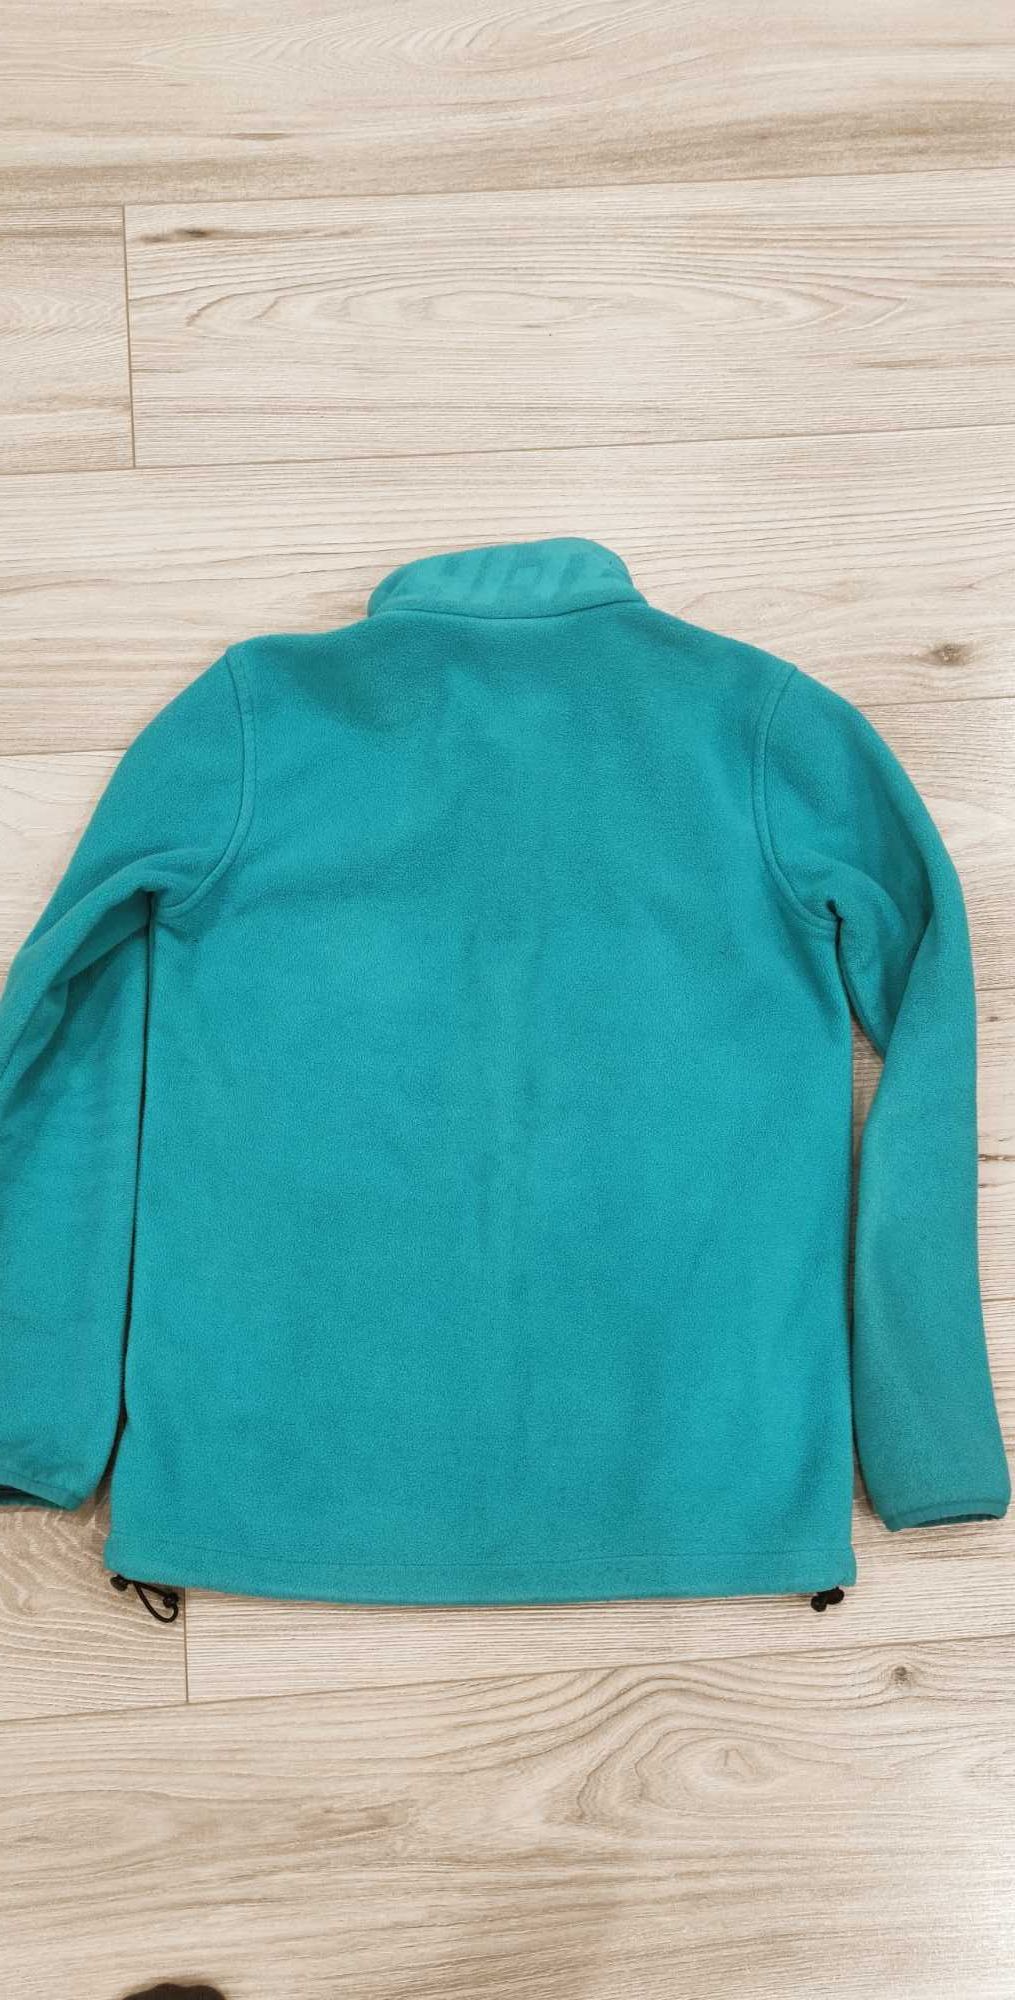 Bluza chłopięca, HI-TEC, 152 cm, zielona